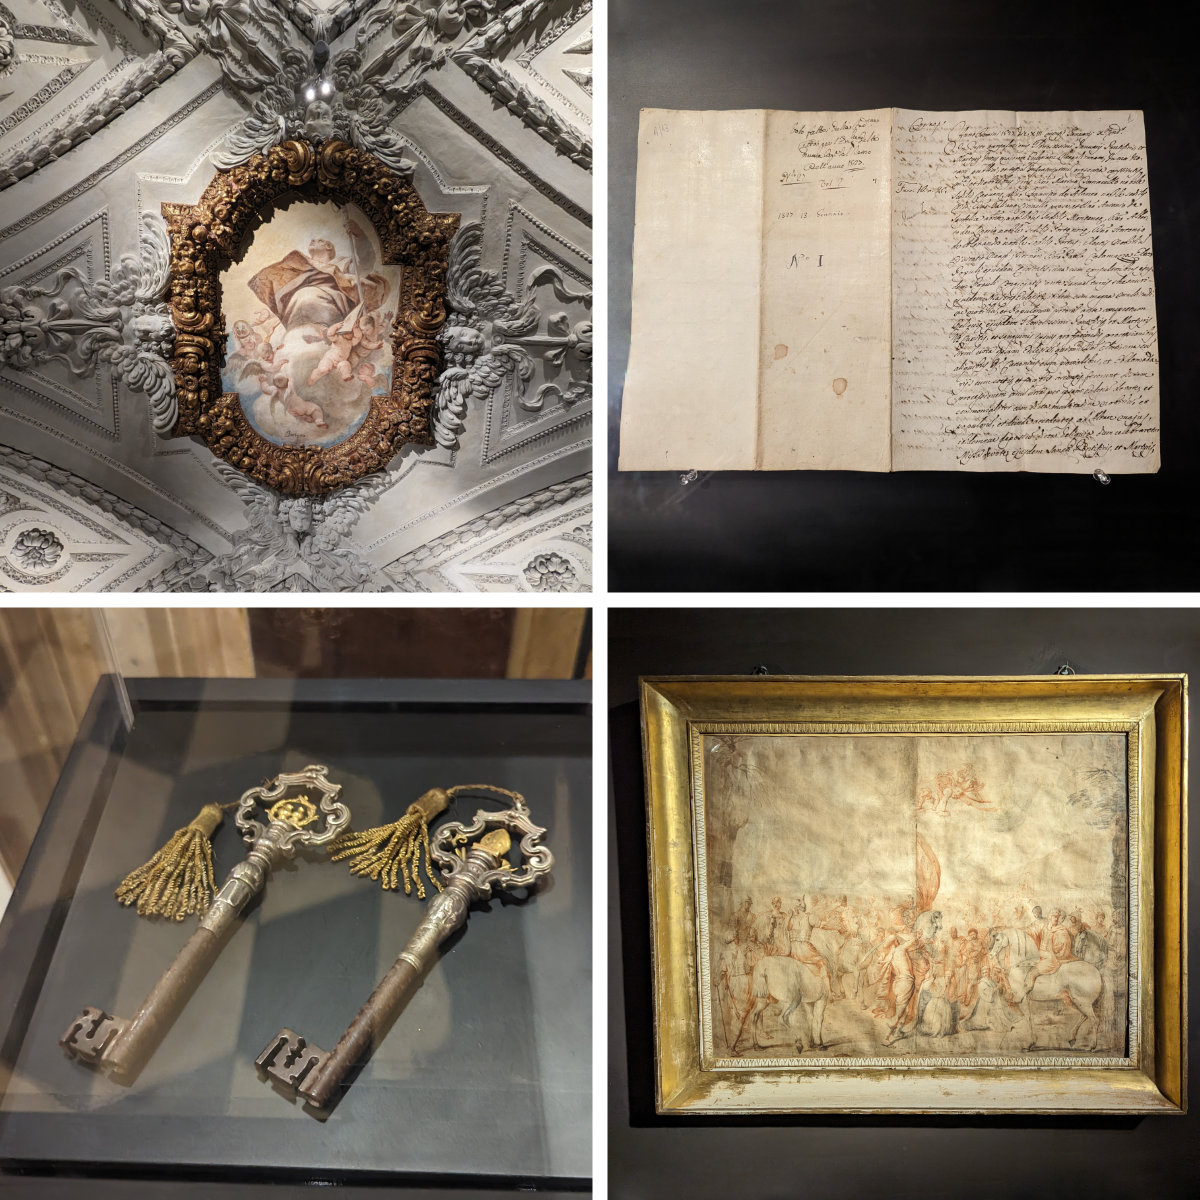 Clockwise from top left: ceiling of cappella di Luca Giordano, Voto della citta di Napoli, reliquary keys, Decollazione di San Gennaro e dei Compagni alla Solfatara